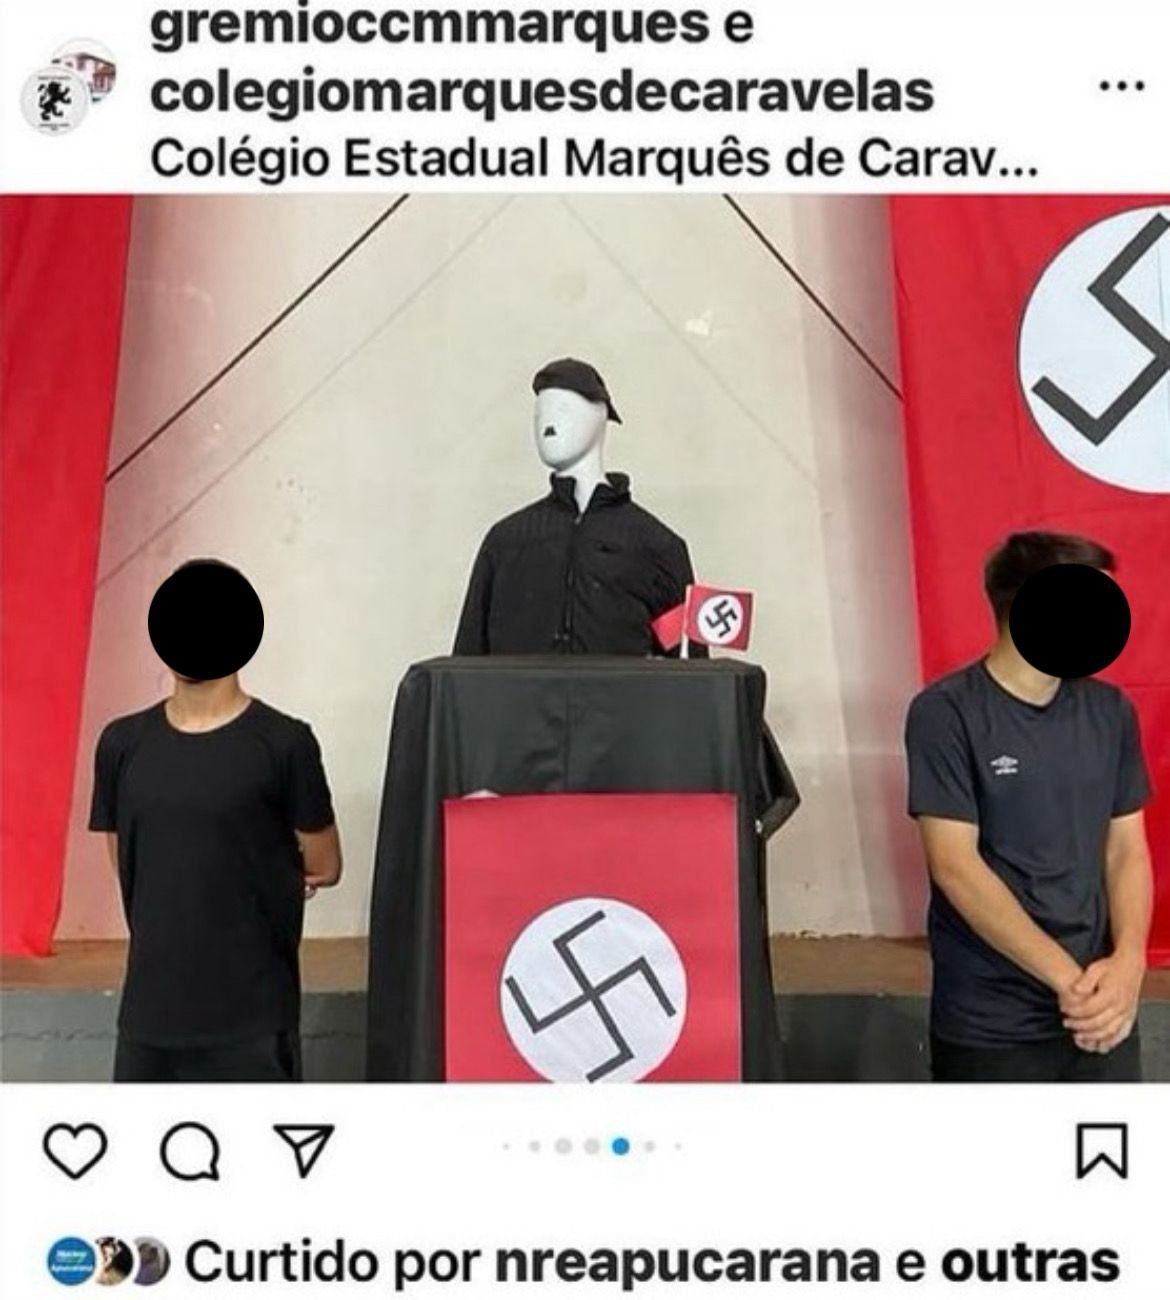 PR: escola cívico-militar é acusada de “promover” nazismo em